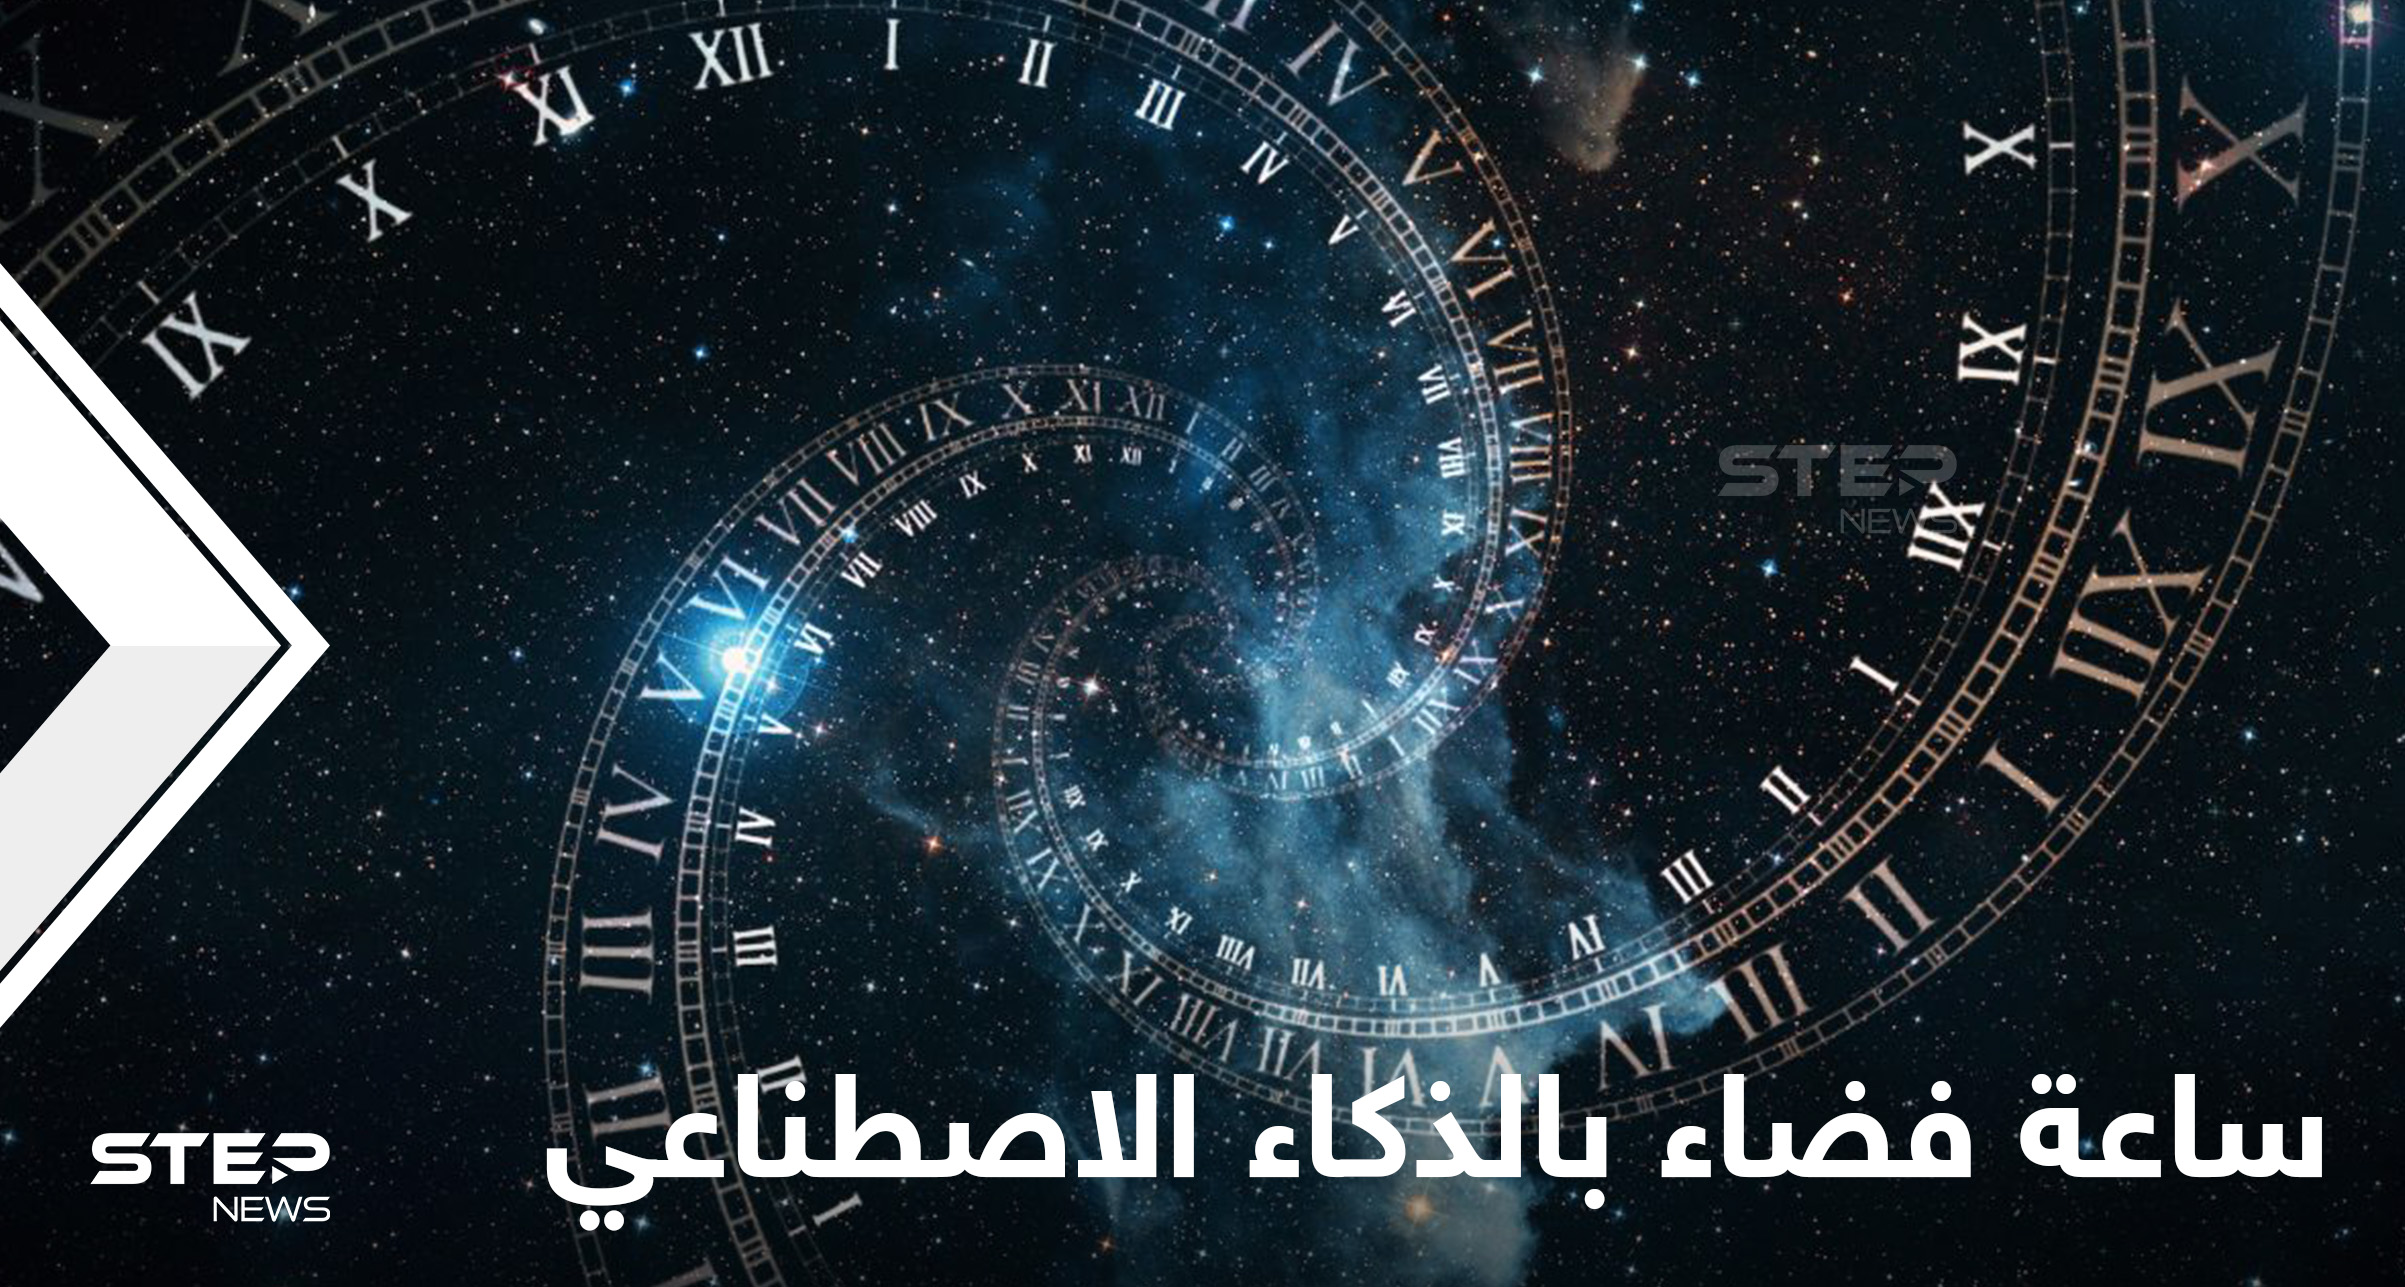 مخترع عربي يكشف تفاصيل اختراع أول ساعة فضاء تعمل بالذكاء الاصطناعي